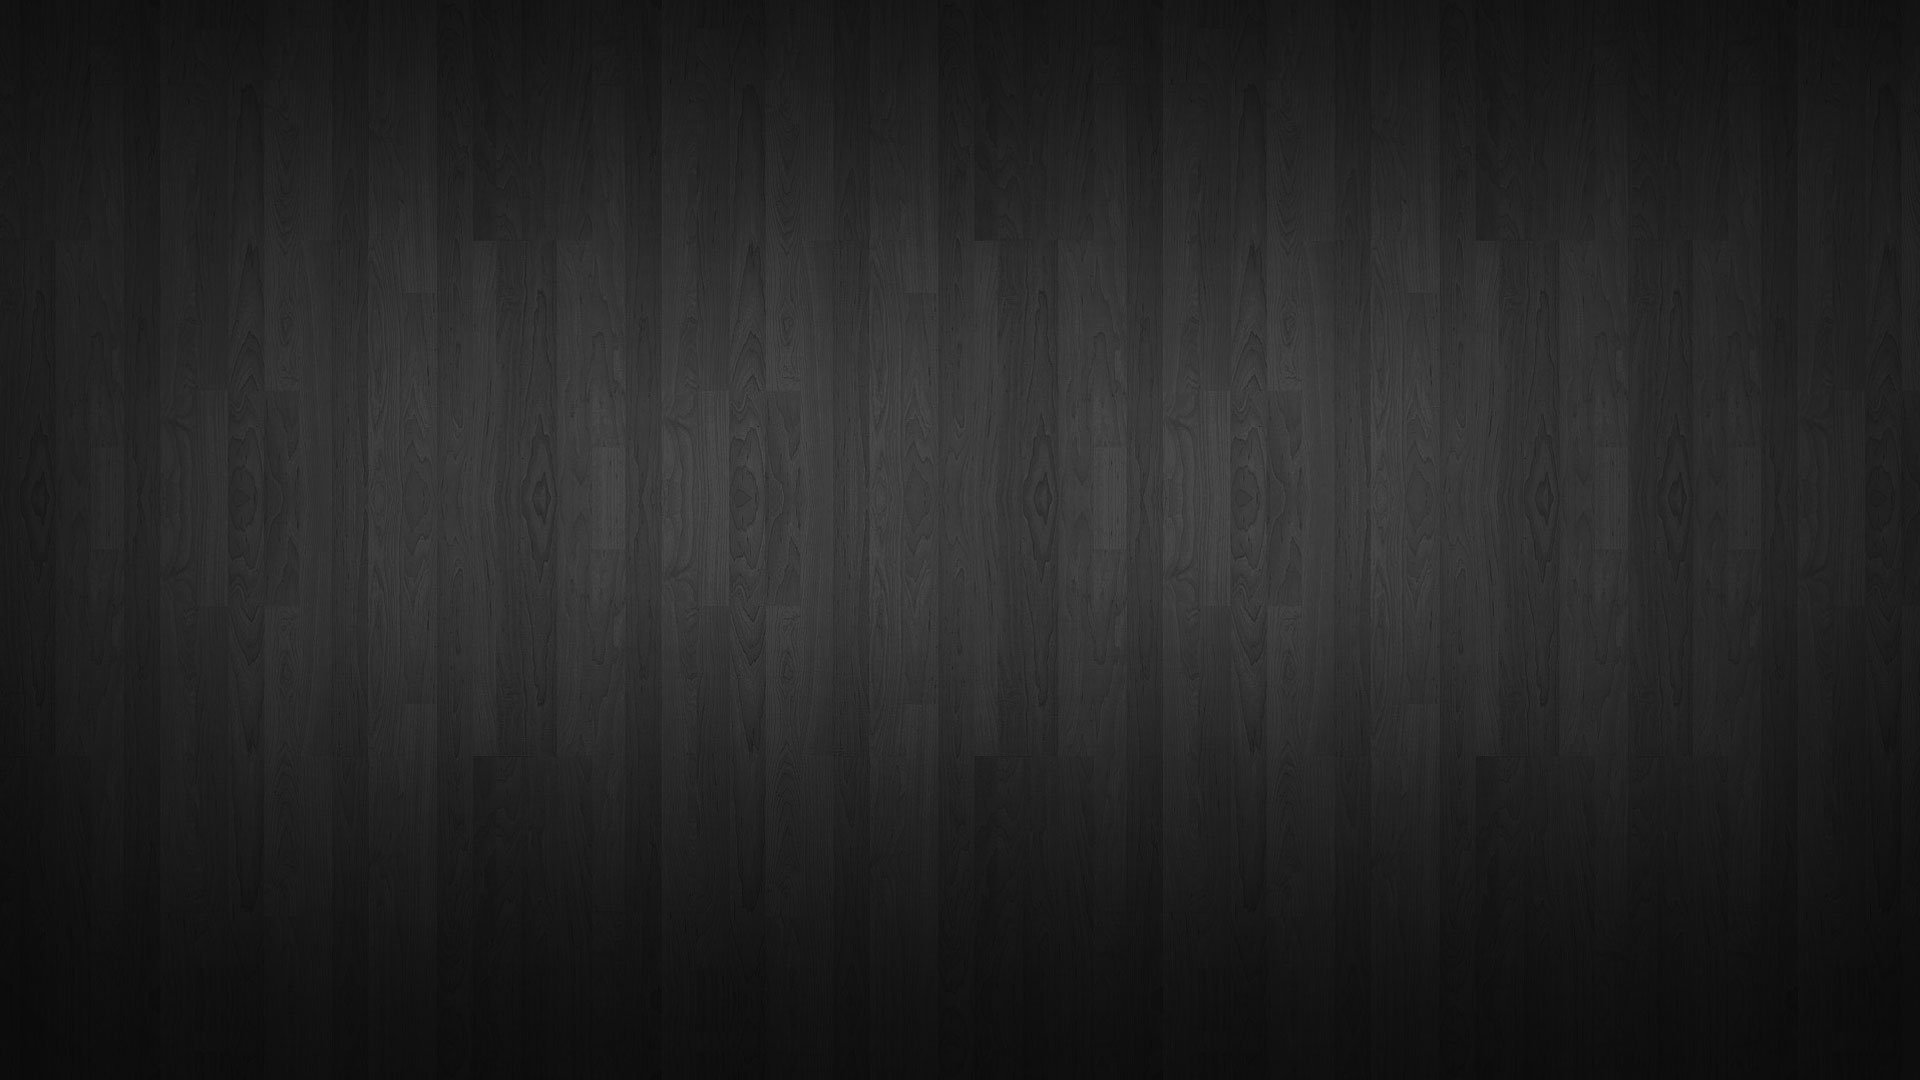 Website Design with Wood Background - Thiết kế trang web với màu nền gỗ Màu nền gỗ không những giúp trang web của bạn trông đẹp mắt, mà còn đem lại cảm giác ấm cúng và gần gũi cho người dùng. Chính vì vậy, chúng tôi cung cấp các loại màu nền gỗ đa dạng để phù hợp với nhu cầu thiết kế của bạn. Nhấn vào hình ảnh để xem thêm các mẫu trang web của chúng tôi sử dụng màu nền gỗ.